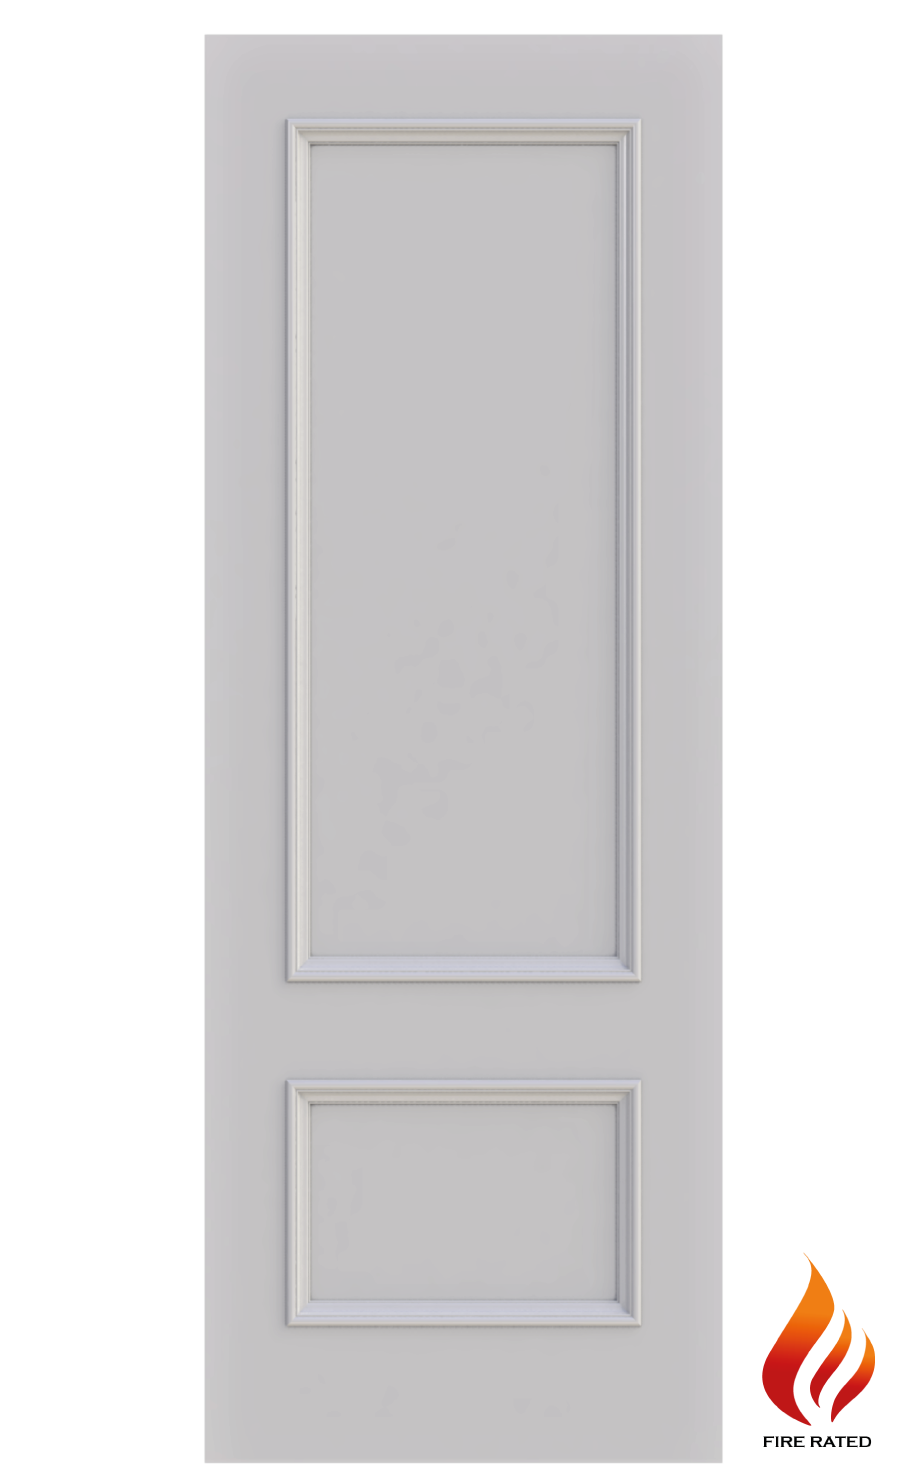 2 panel fire doors